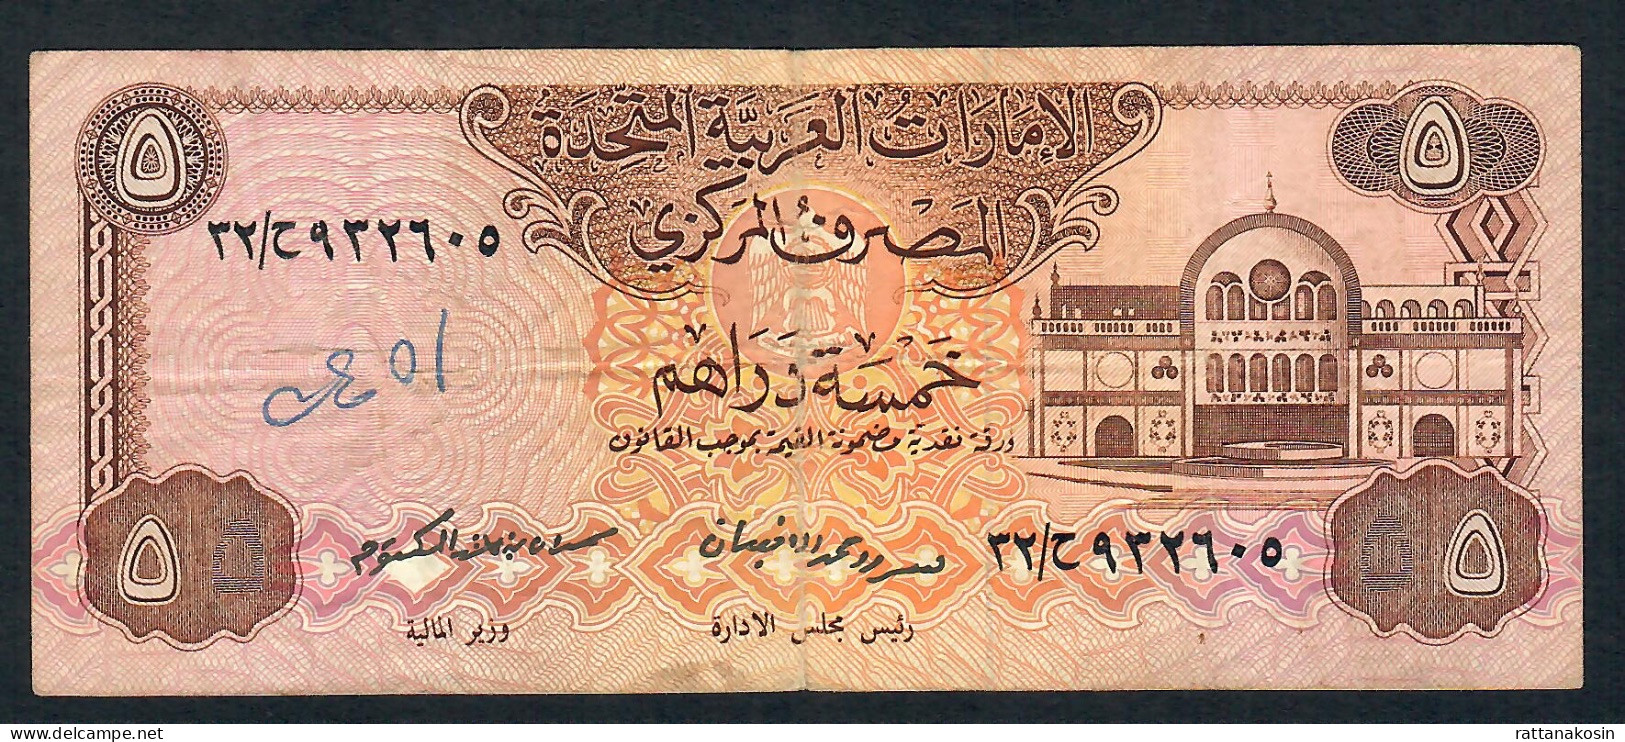 U.A.E.  P7 5 DIRHAMS 1982  Signature 1 FINE - Emiratos Arabes Unidos